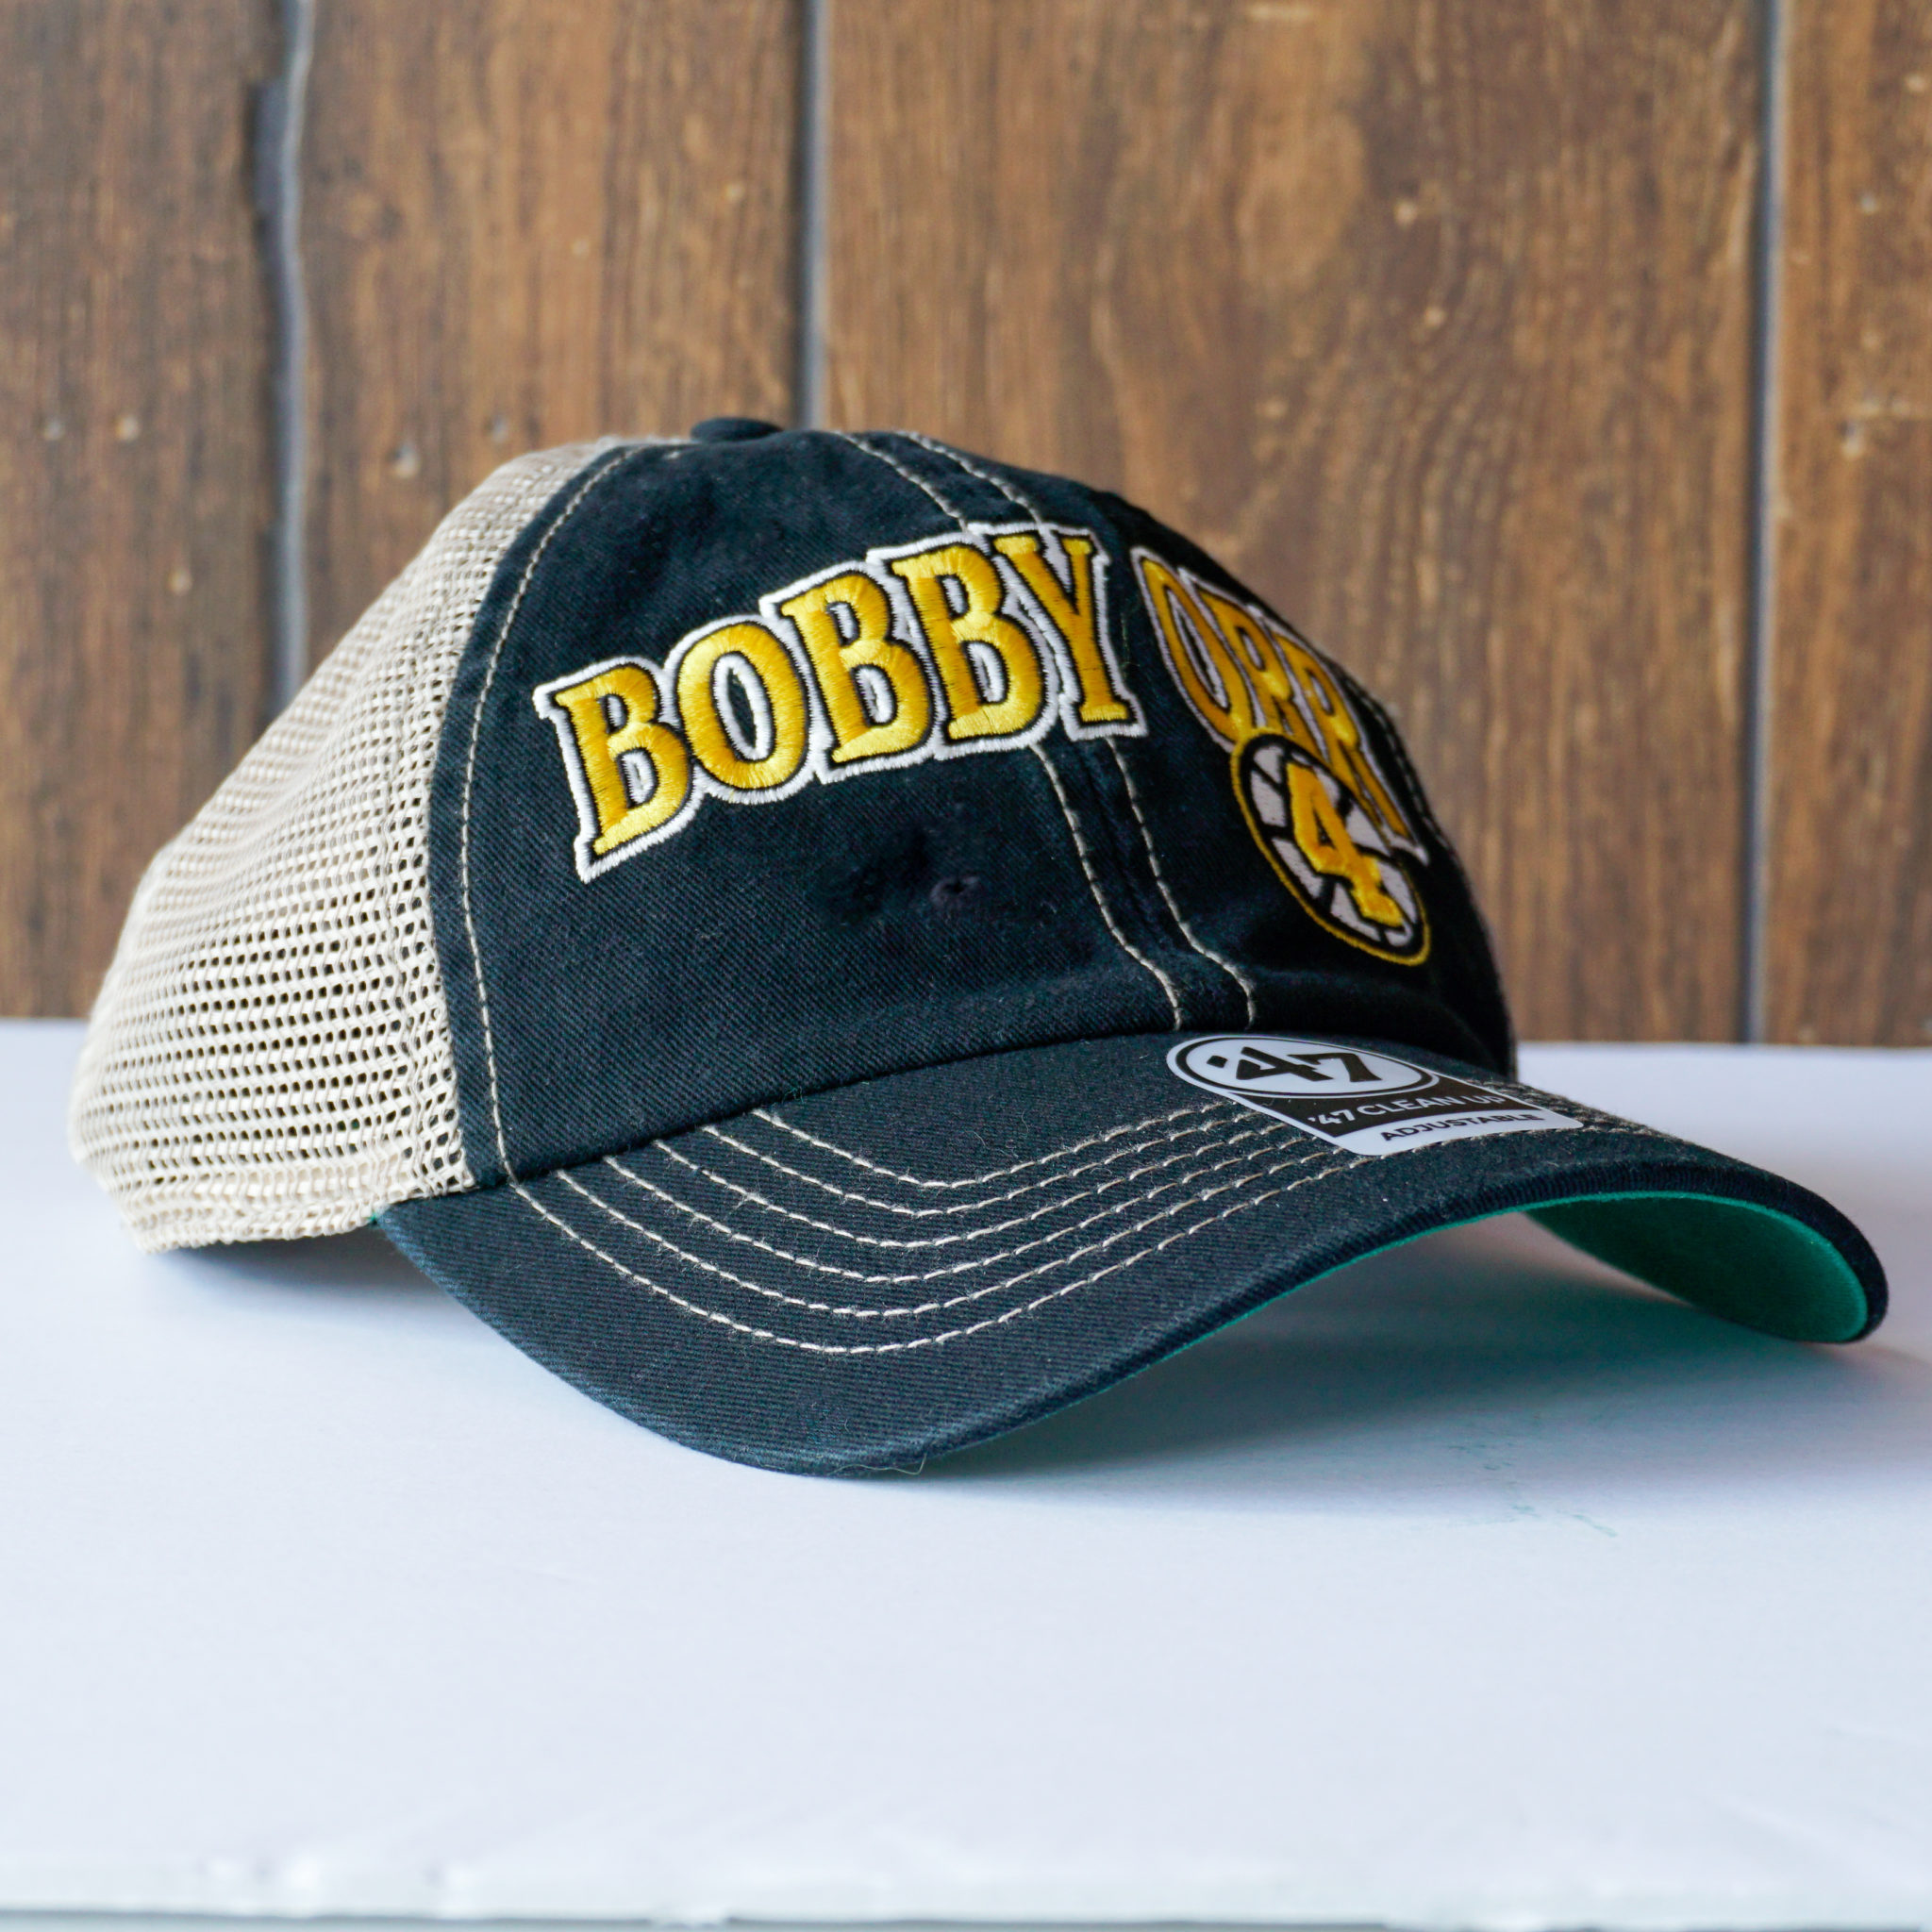 bobby orr 4 hat